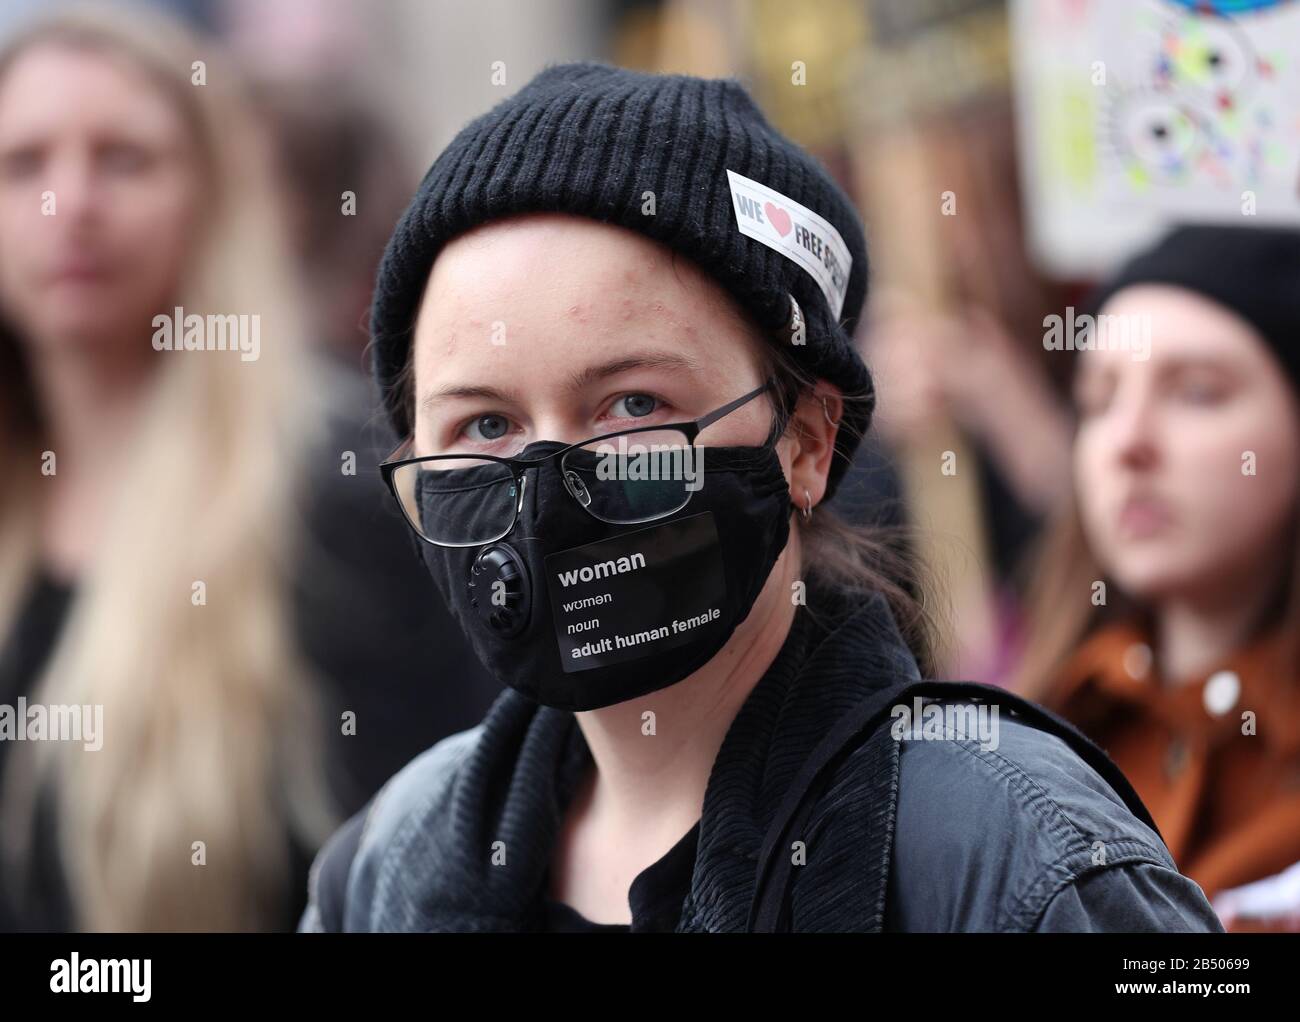 Un manifestante con máscara facial durante la marcha Million Women Rise, para exigir el fin de la violencia masculina contra mujeres y niñas en todas sus formas, en el centro de Londres. Foto de stock